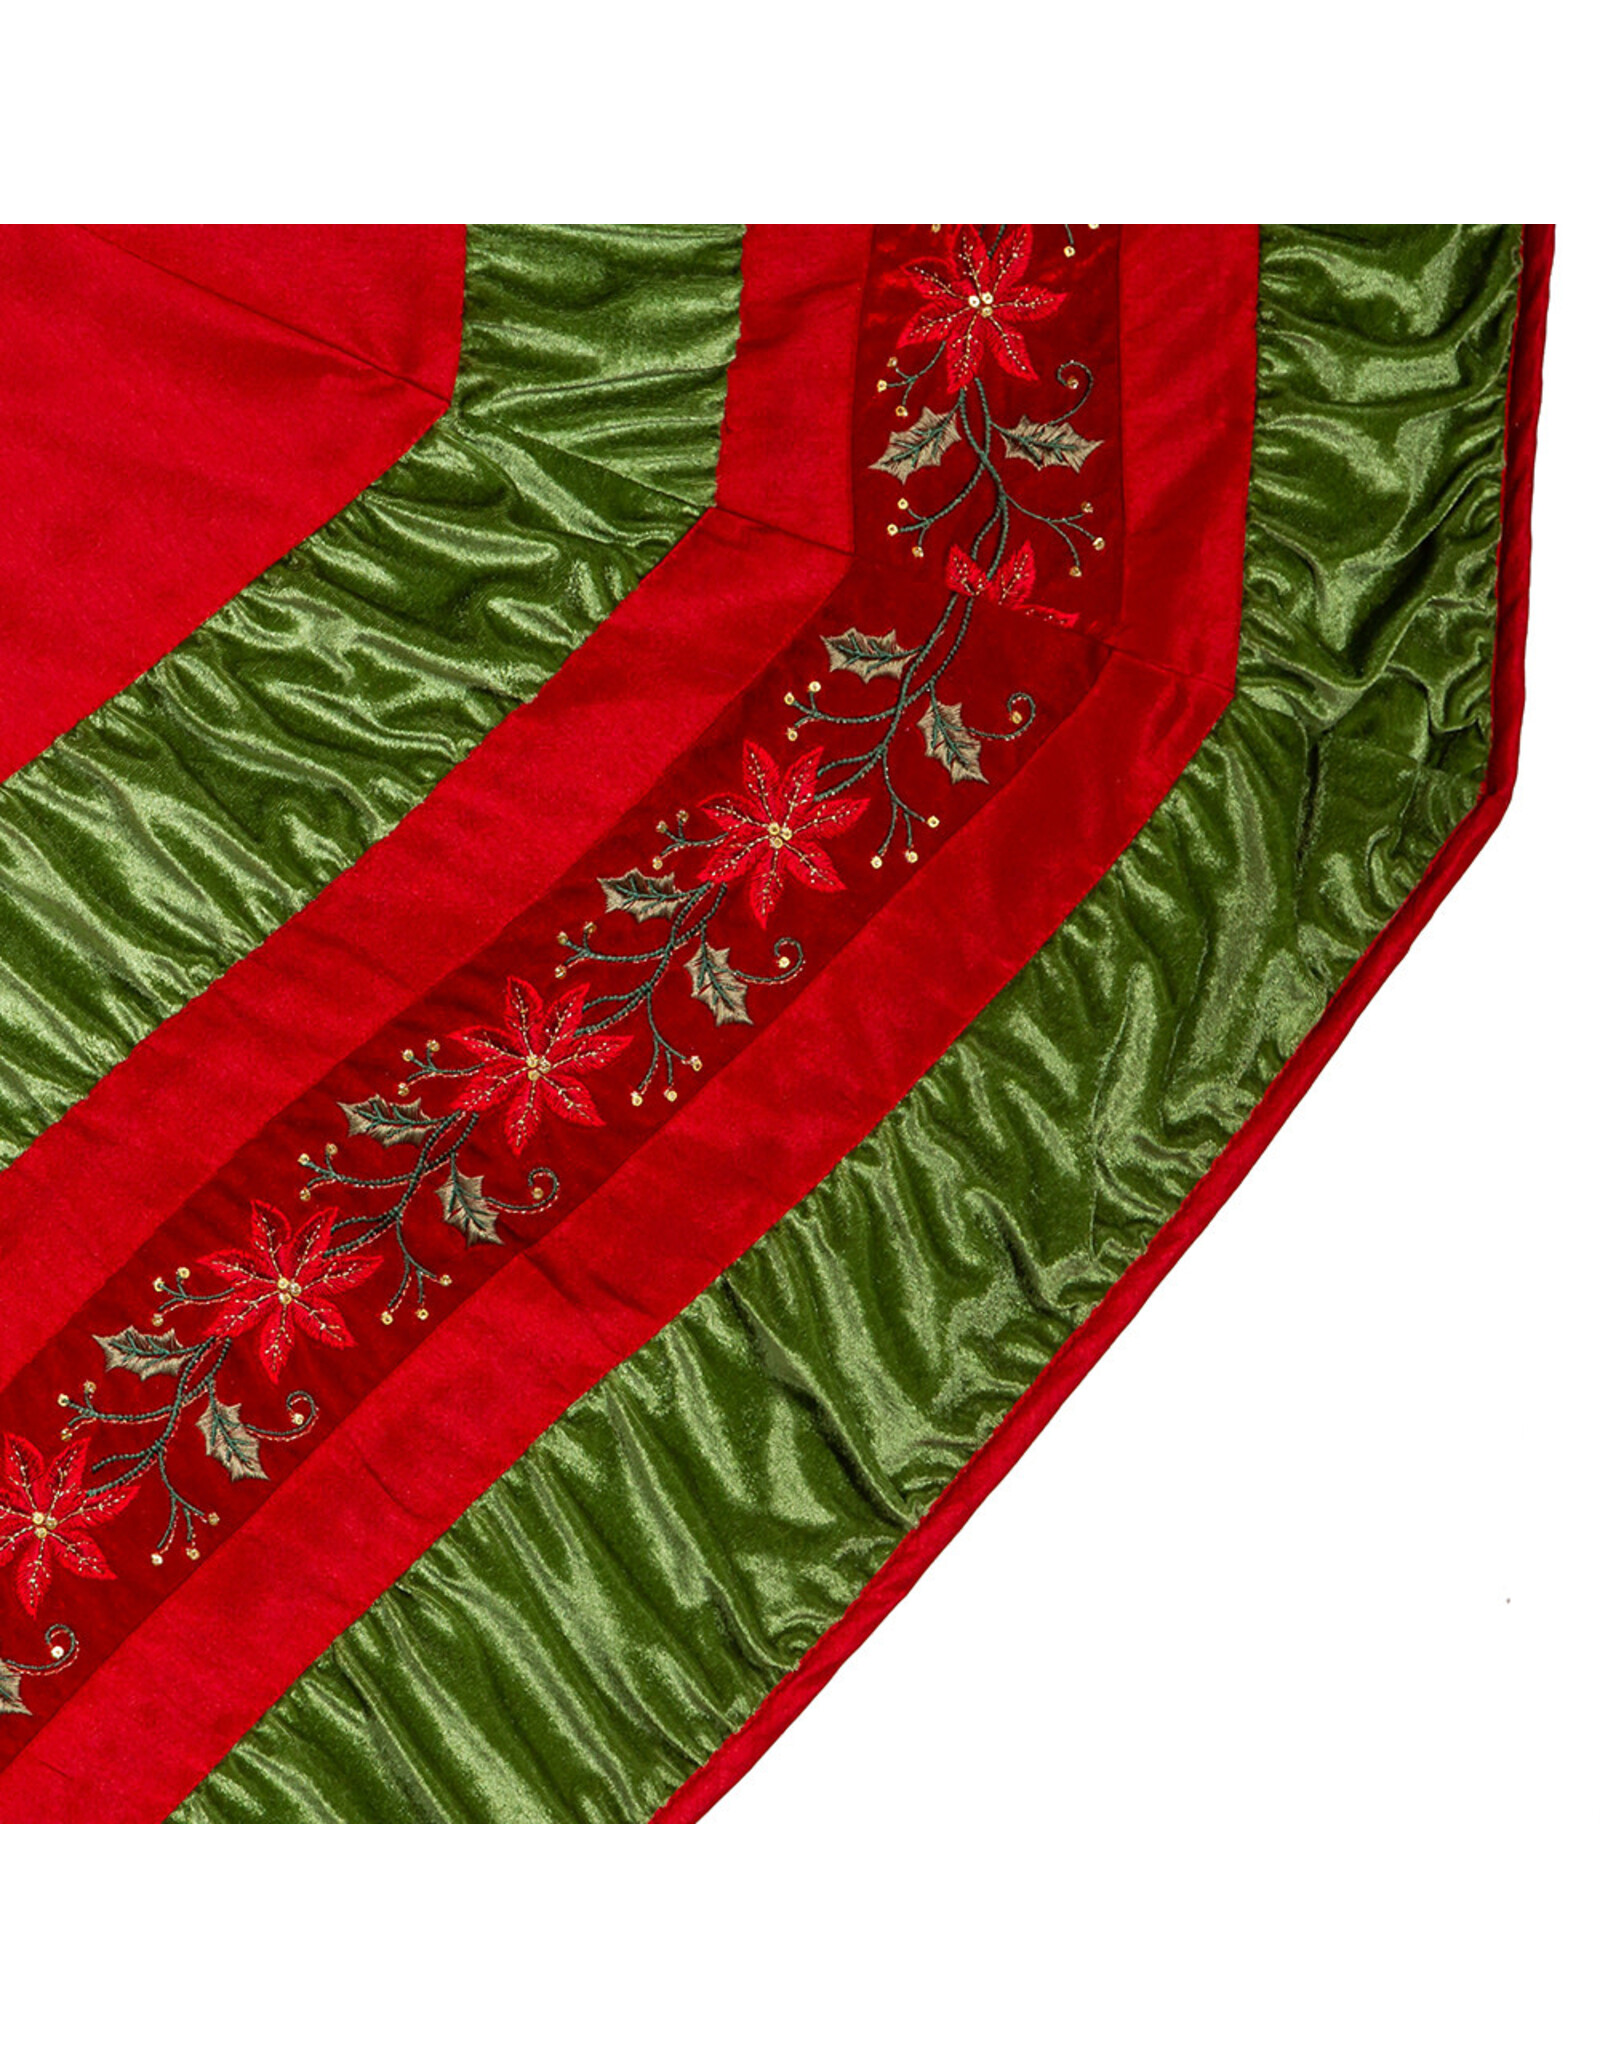 Kurt Adler Christmas Tree Skirts 72” Red w Green Border Tree Skirt